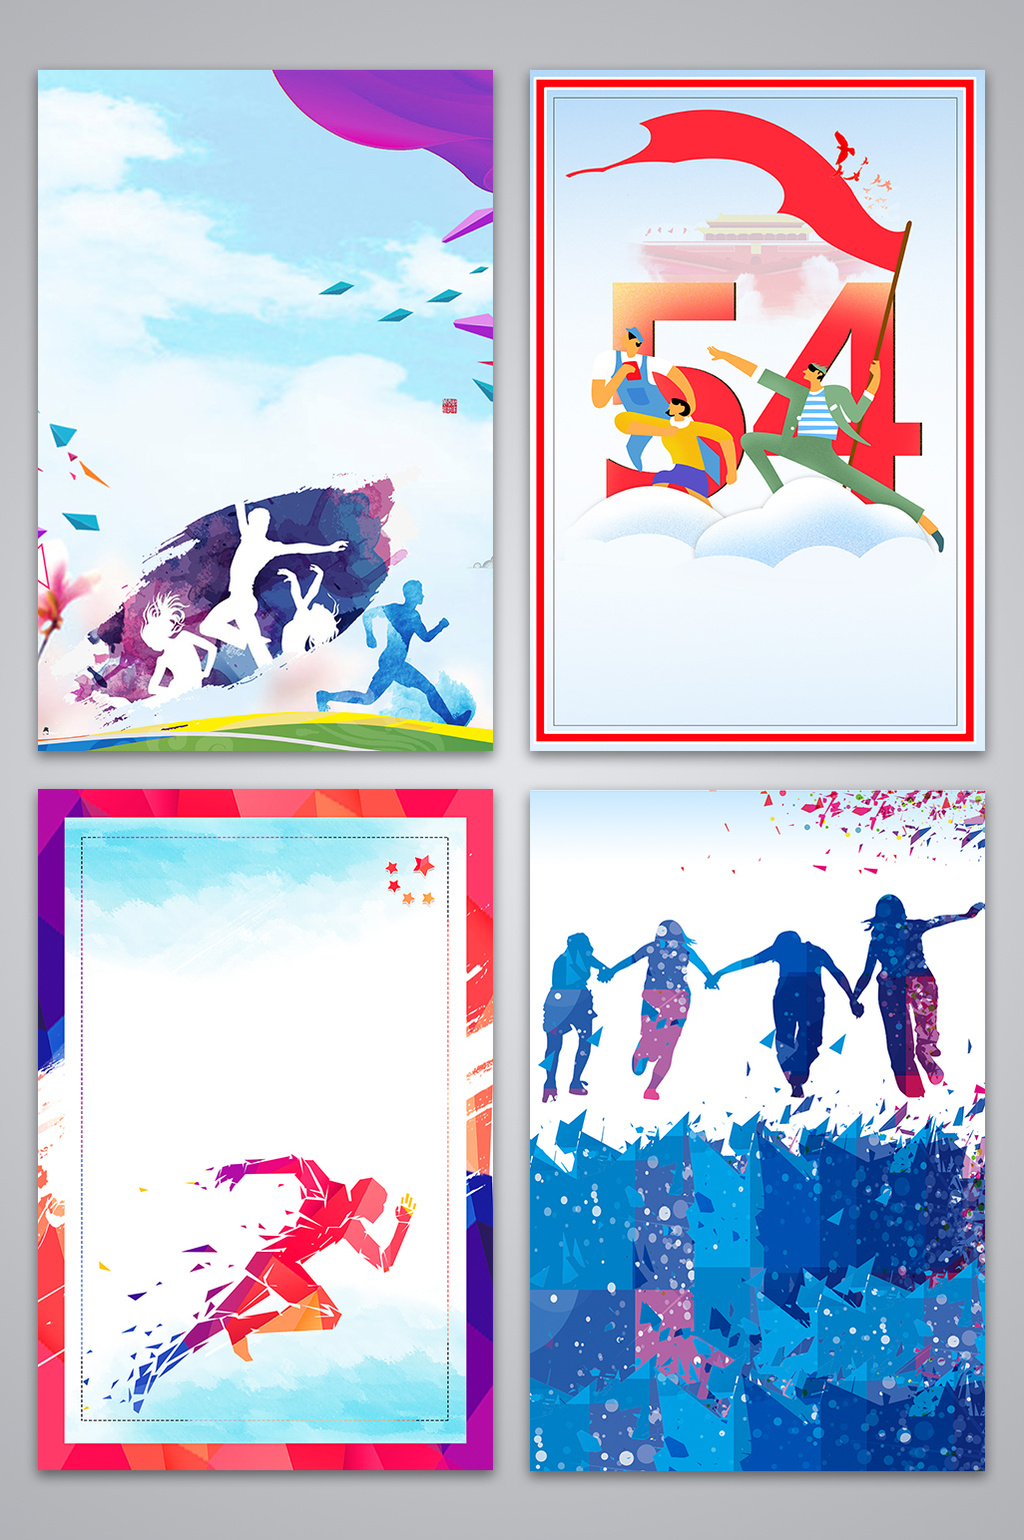 风五四追逐梦想海报设计背景图素材免费下载,本次作品主题是广告设计